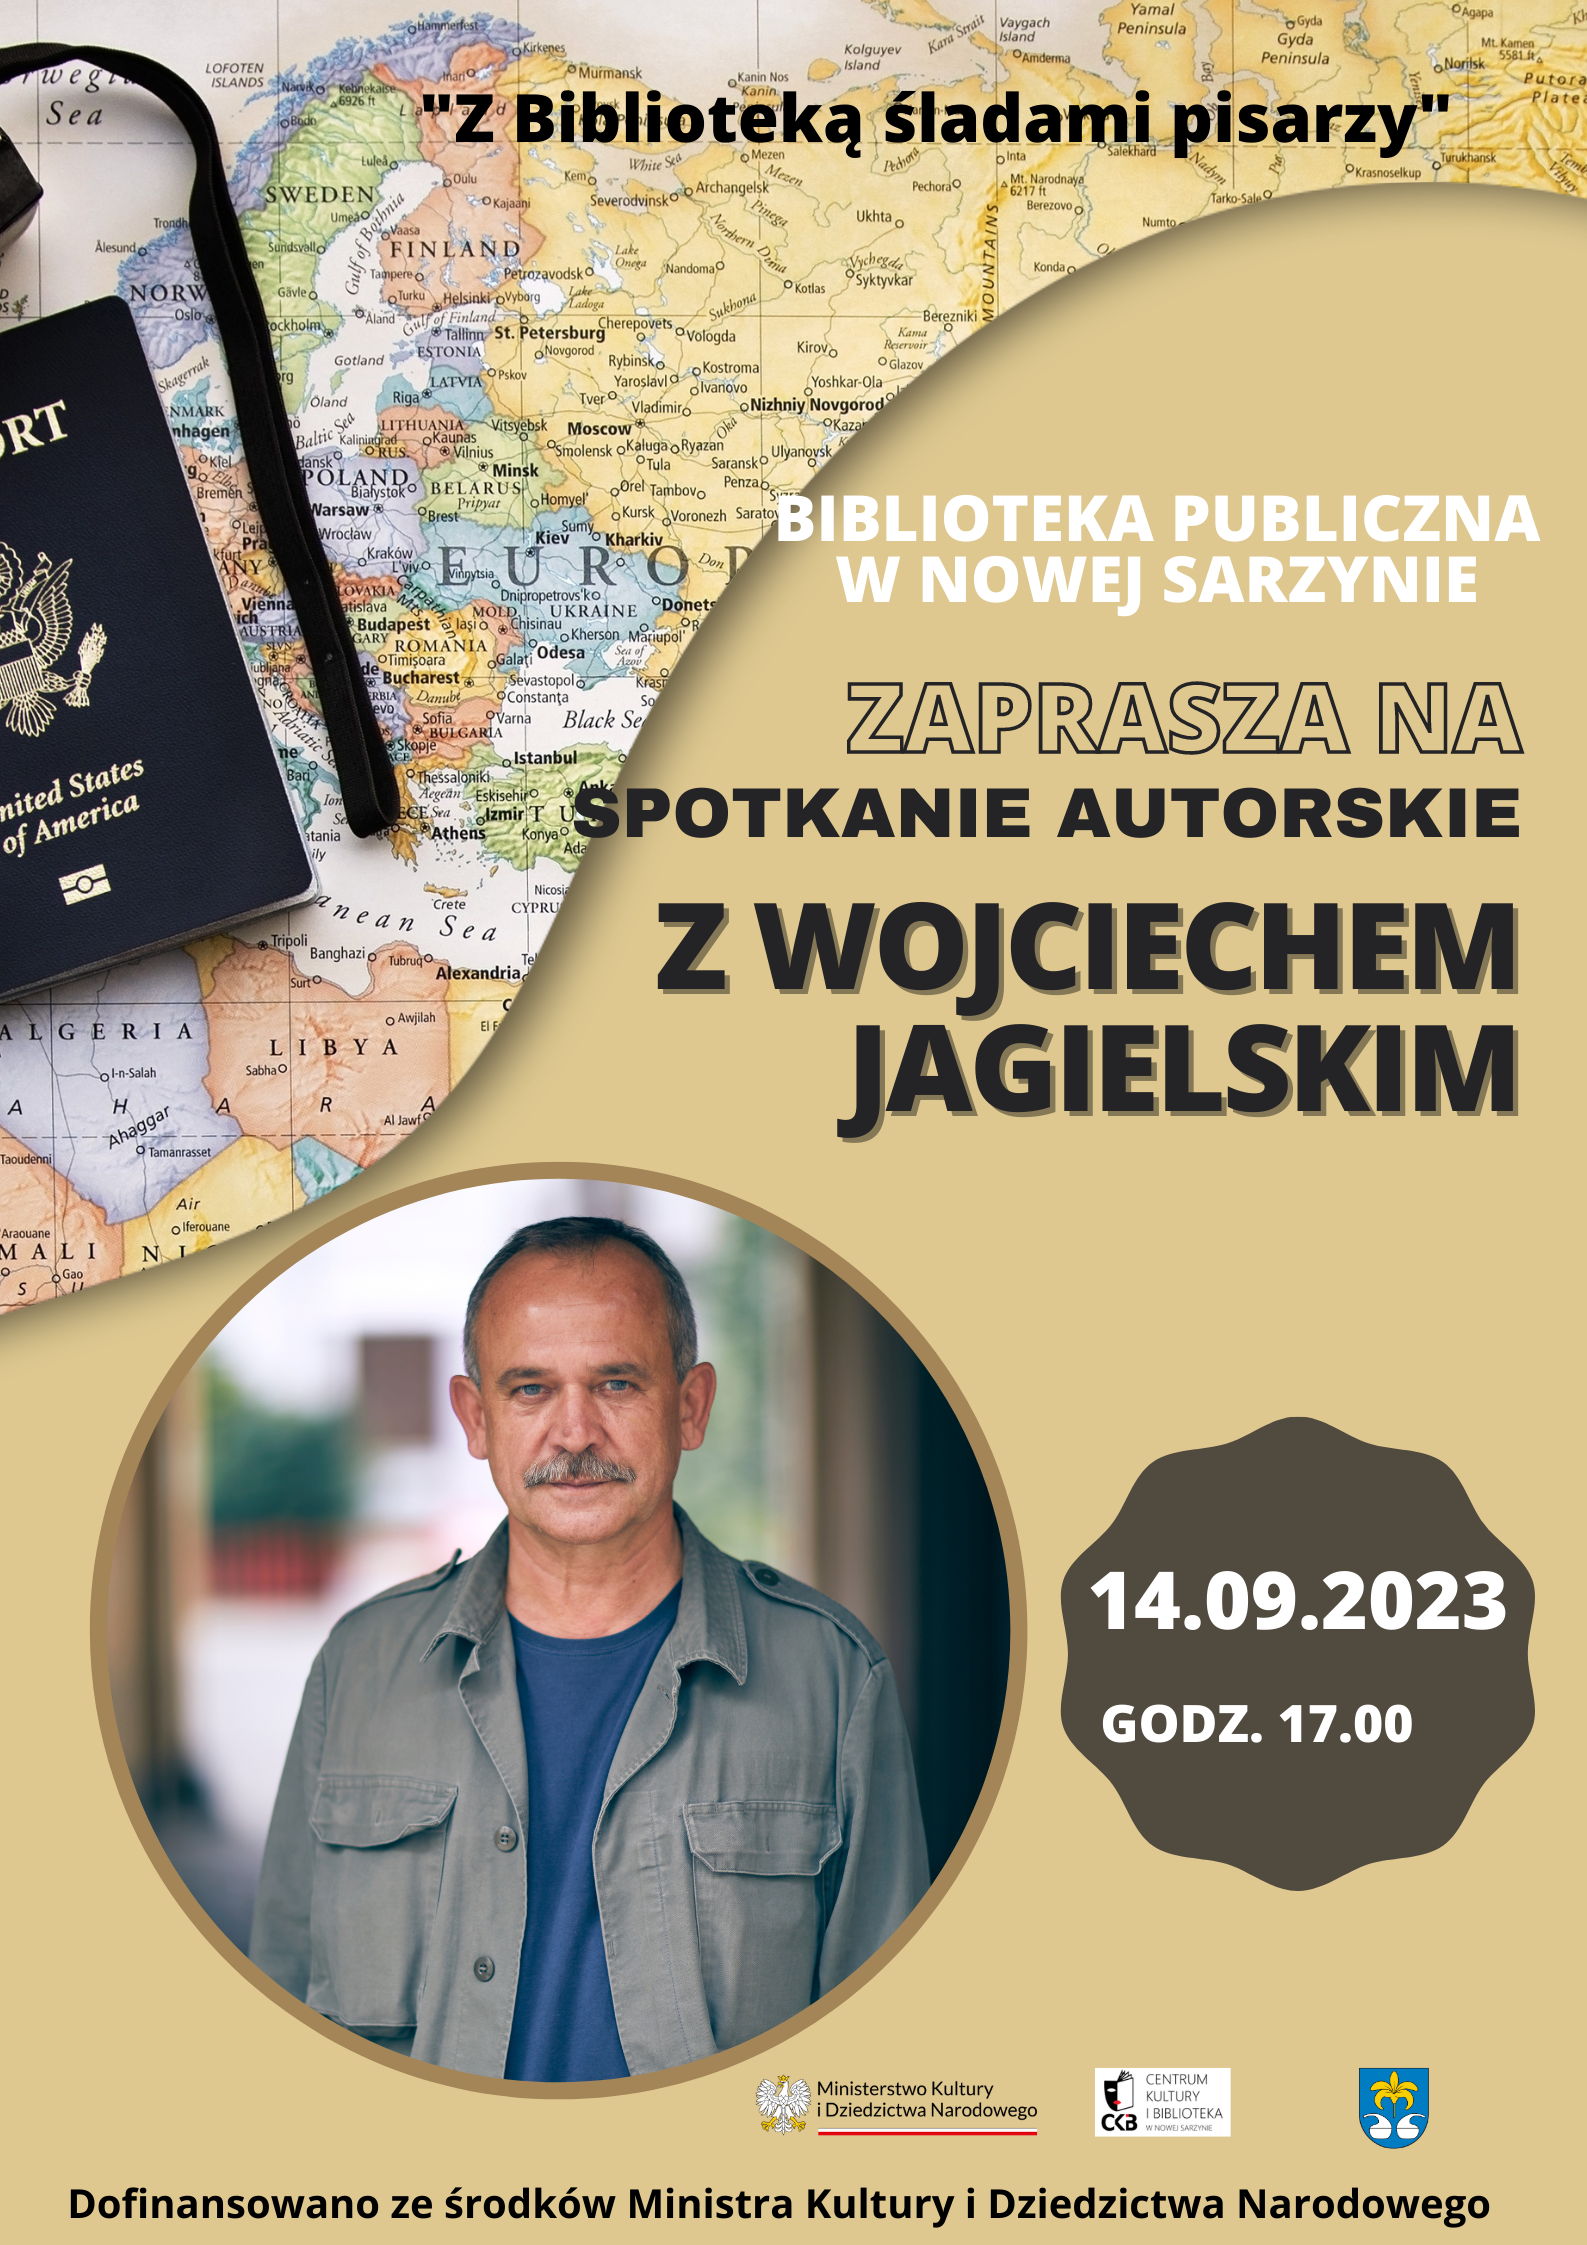 Spotkanie autorskie z Wojciechem Jagielskim